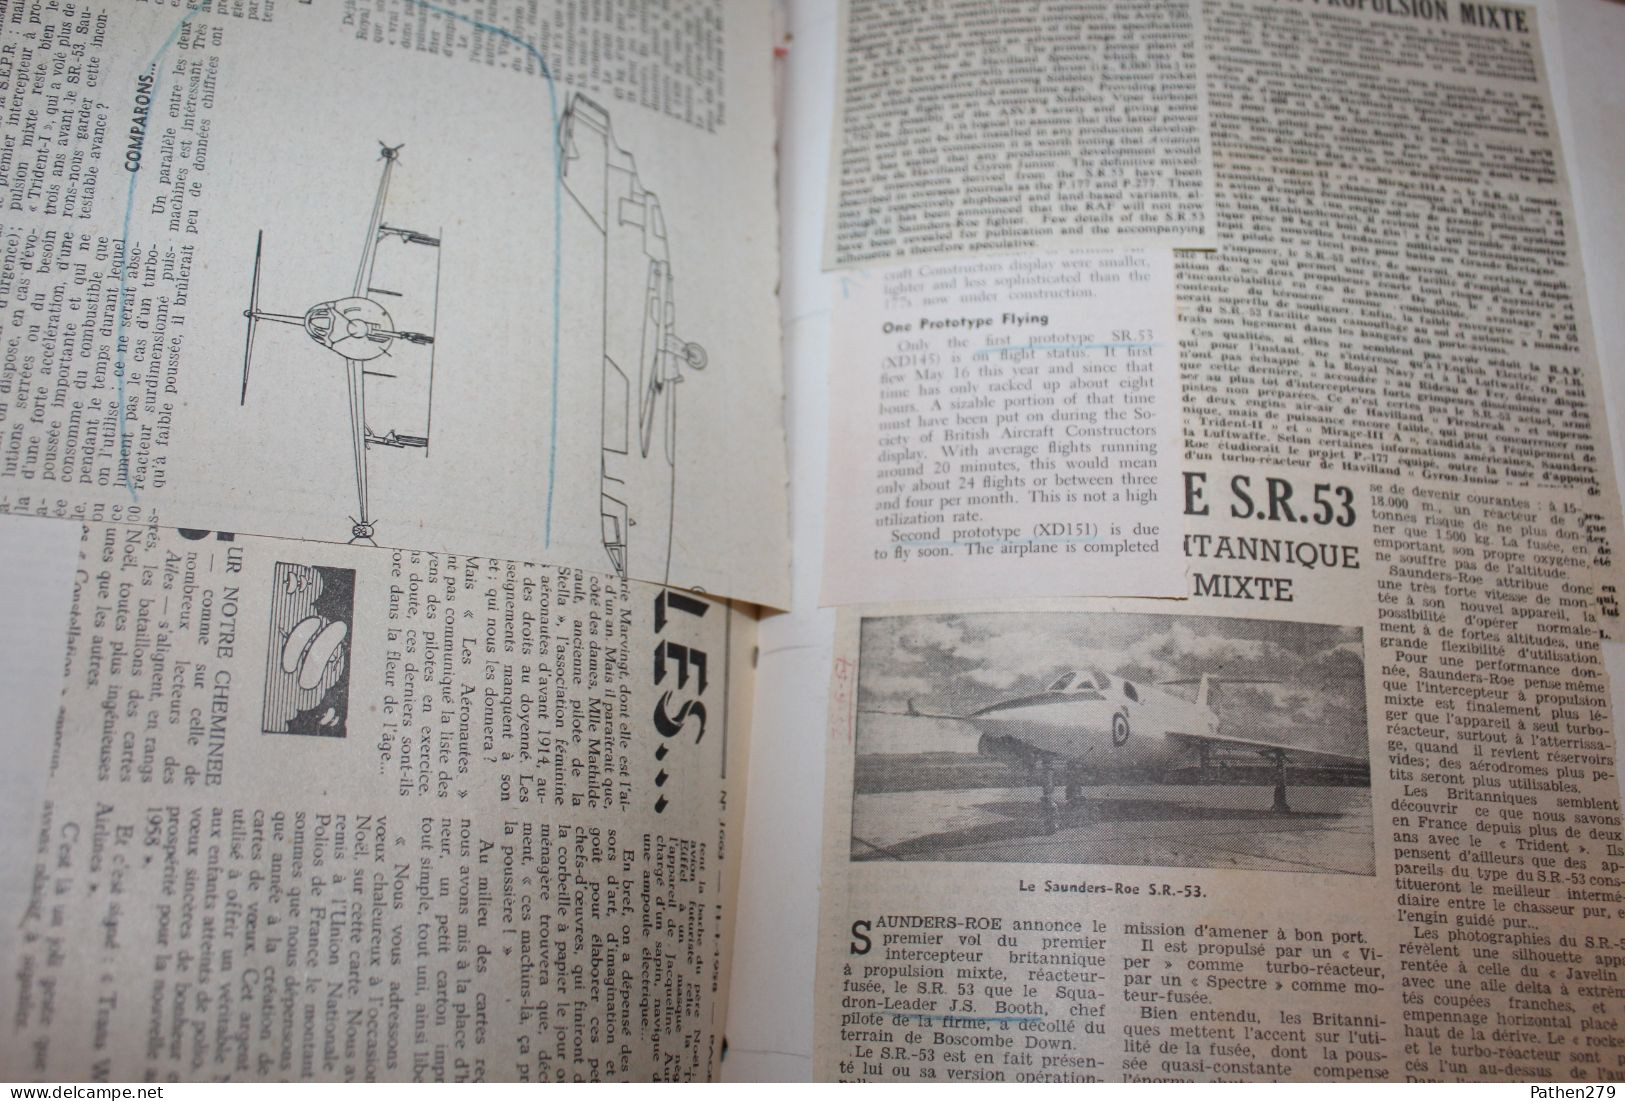 Dossier aéronef britannique Saunders-Roe SR-53